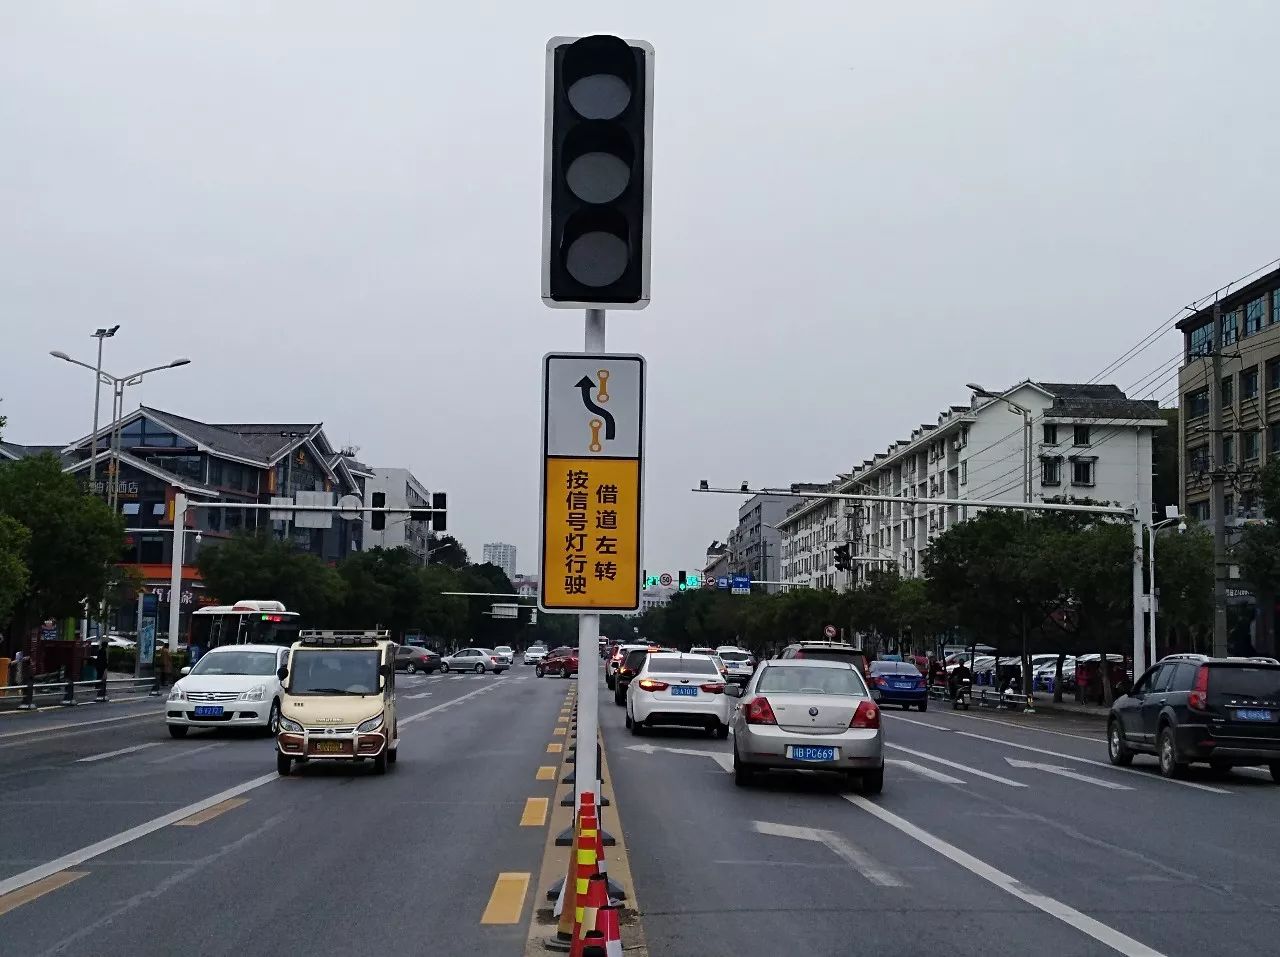 提高左转通行效率,绵阳增设了借道左转的交通标牌和交通信号灯,这也是